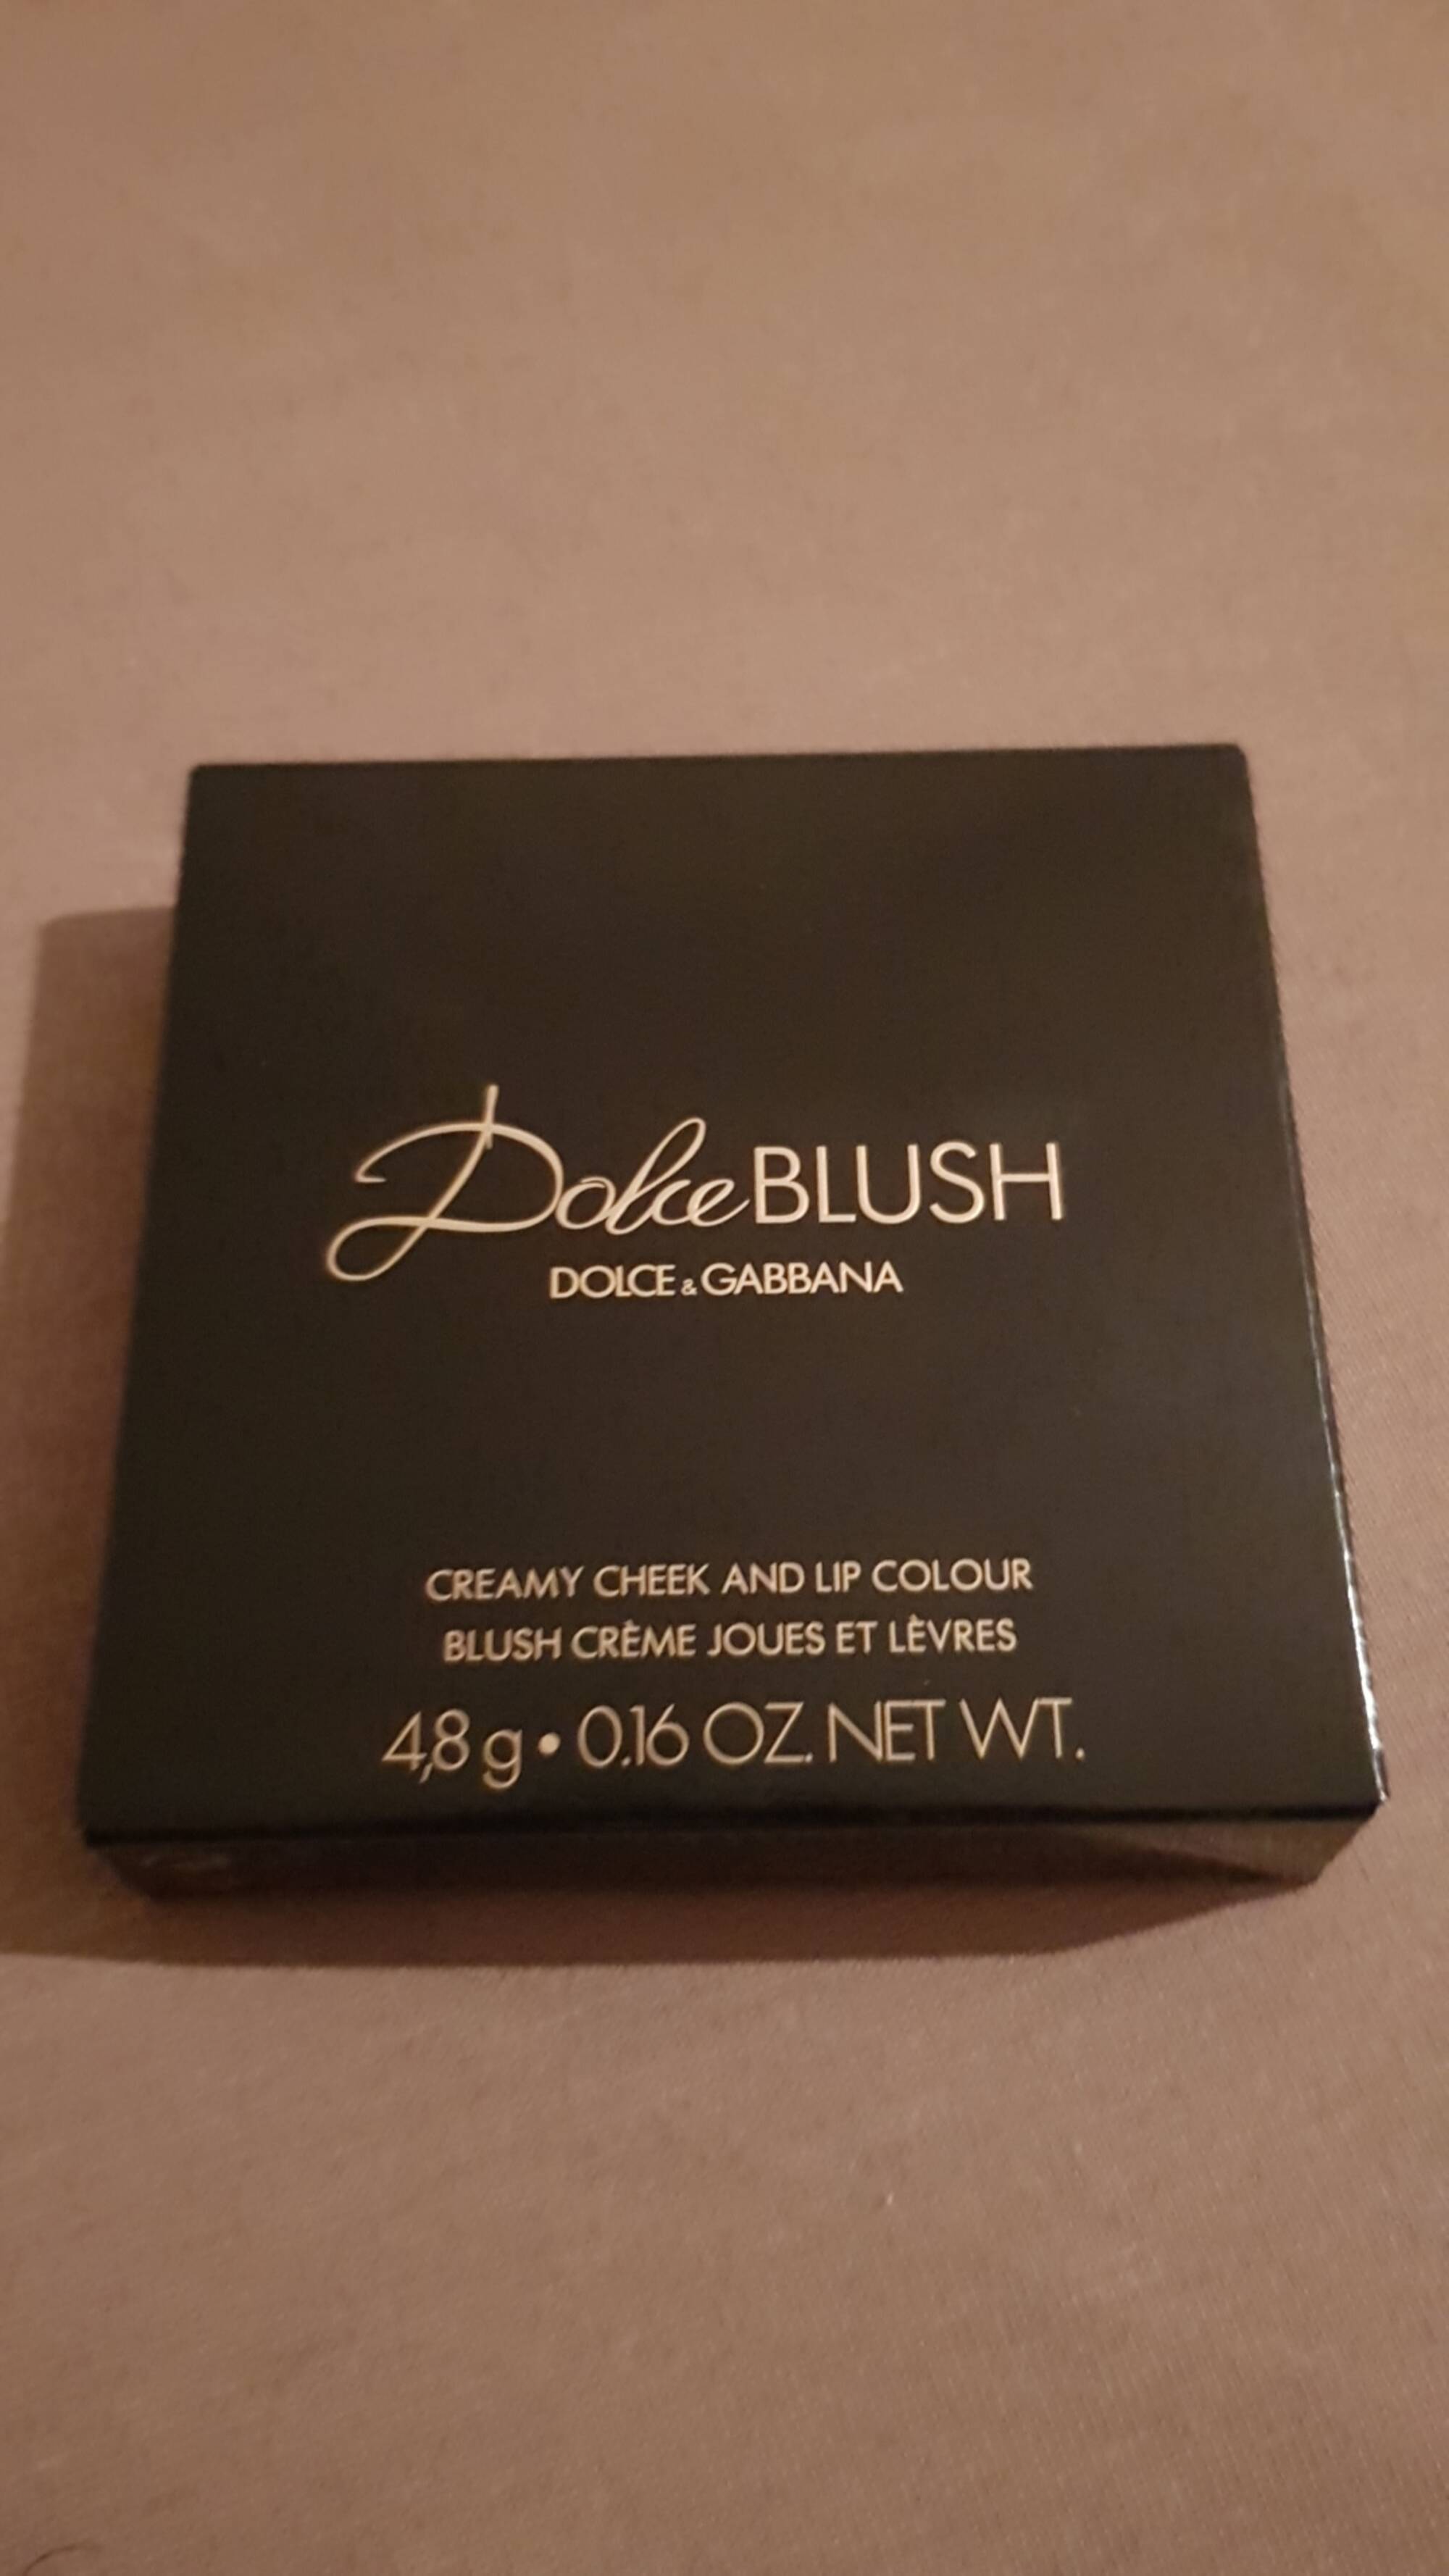 DOLCE & GABBANA - Dolce Blush - Blush crème joues et lèvres